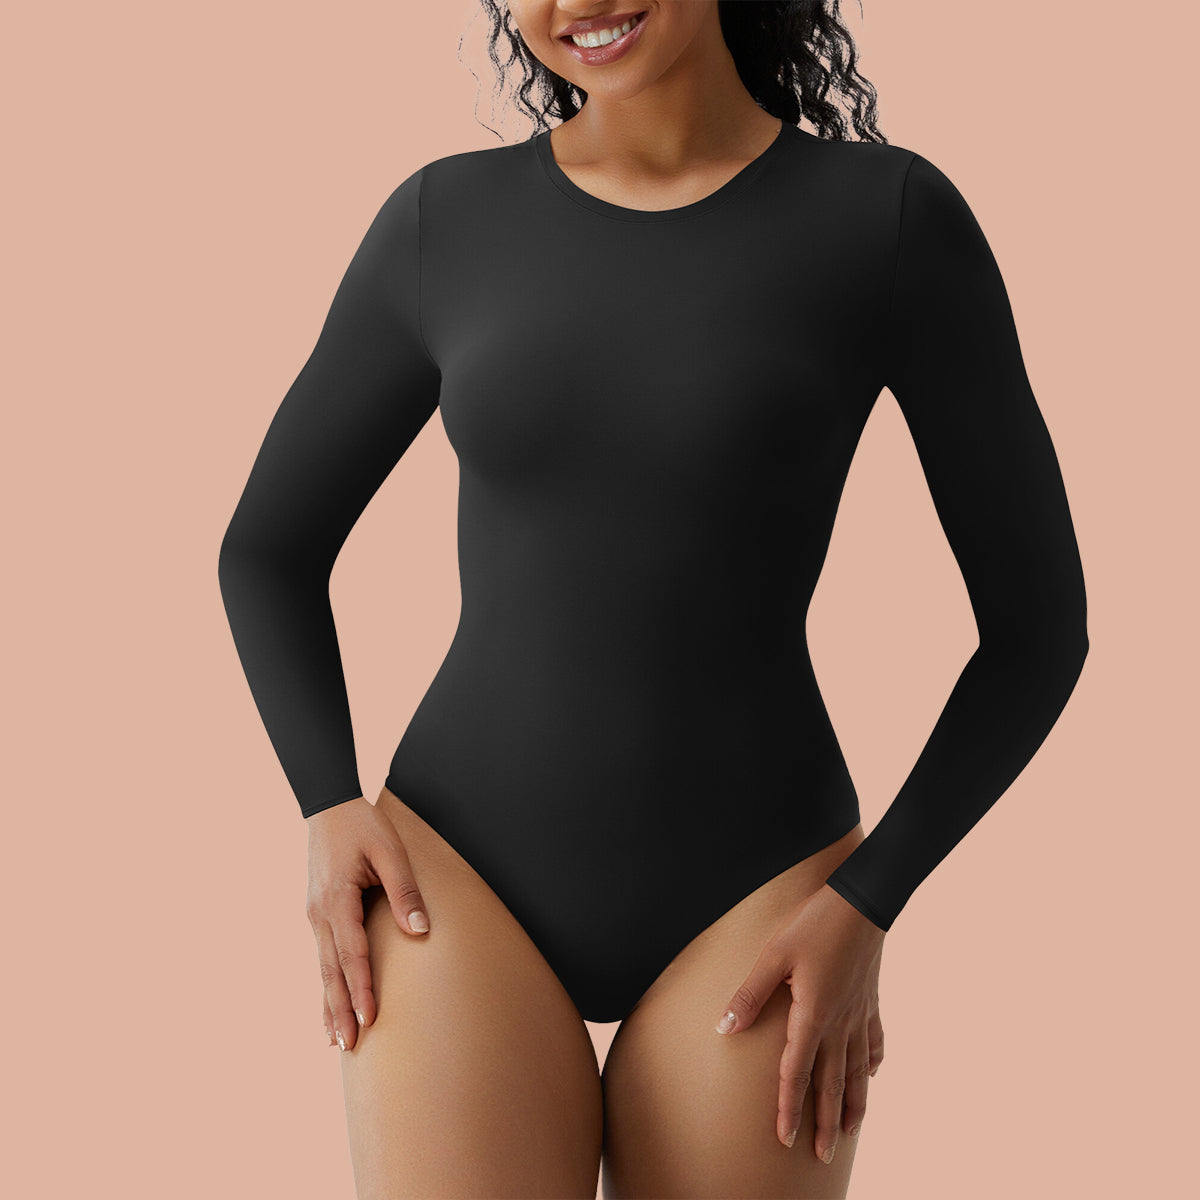  Women's Bodysuit Tops, Long Sleeve Thong Bodysuit for